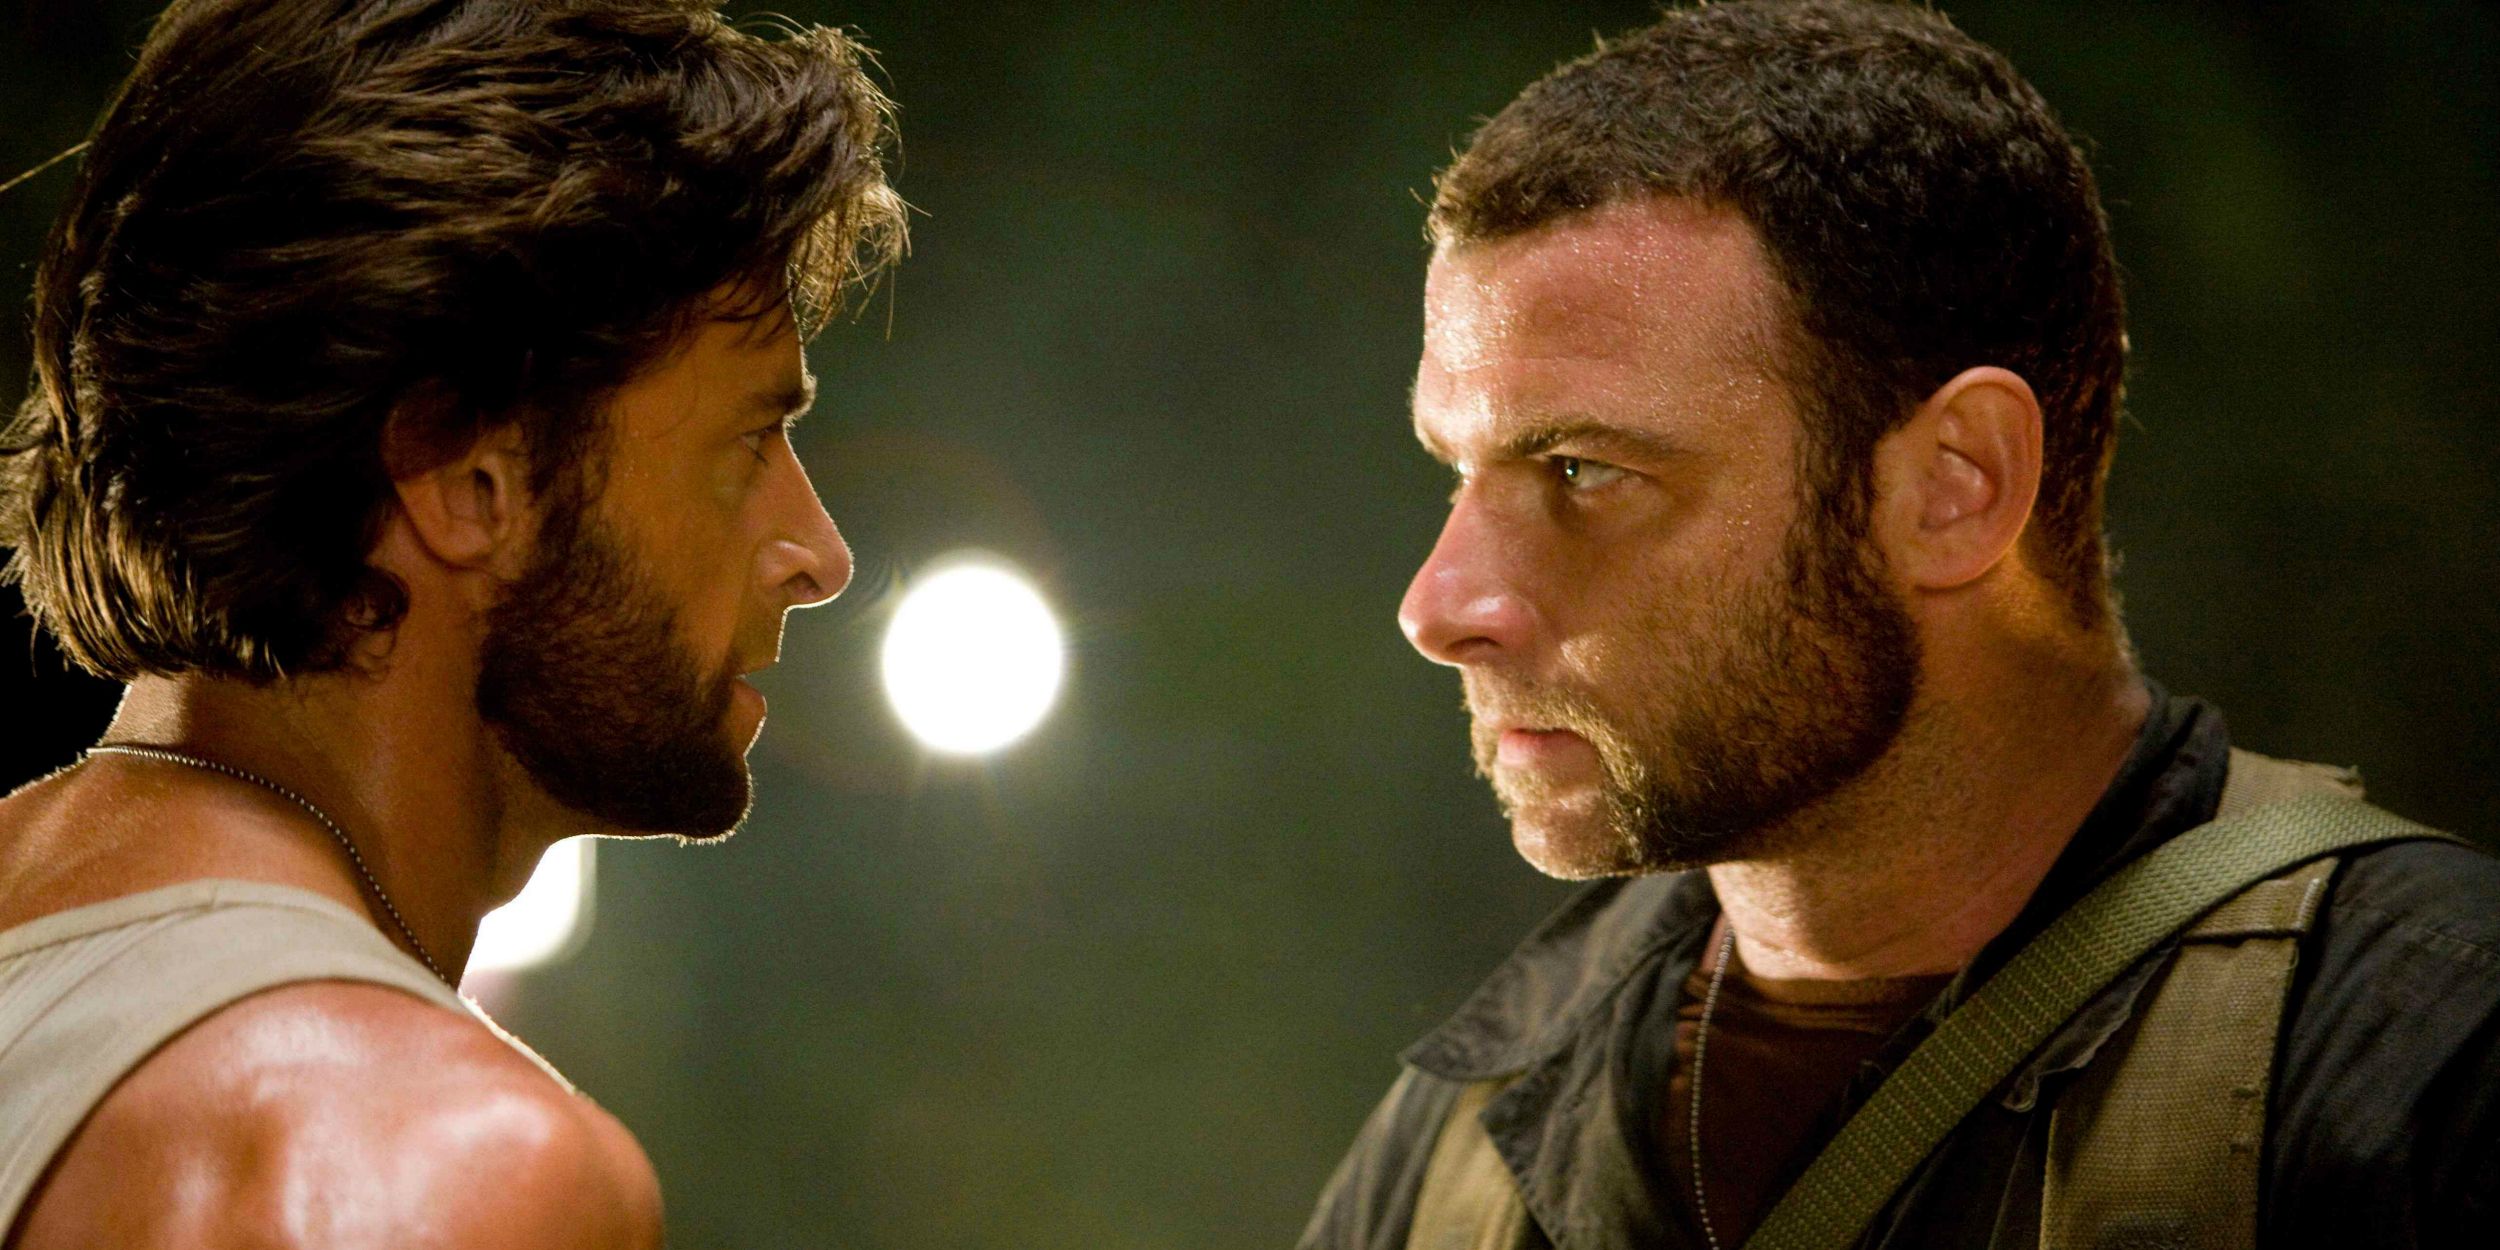 Liev Schreiber and Hugh Jackman in X-Men Origins Wolverine